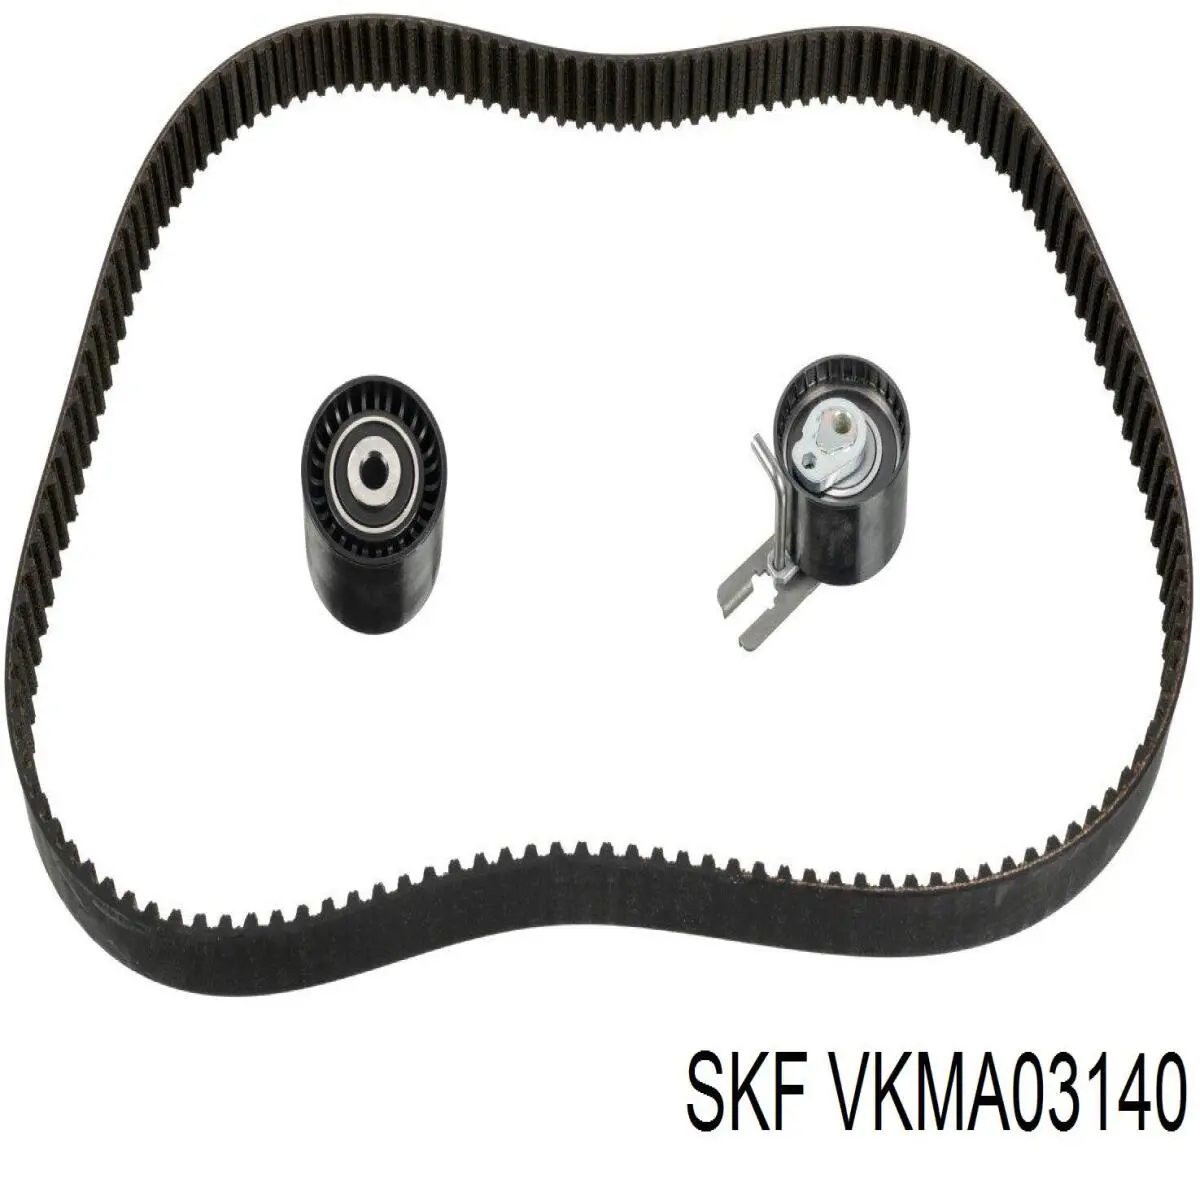 VKMA 03140 SKF kit de correa de distribución